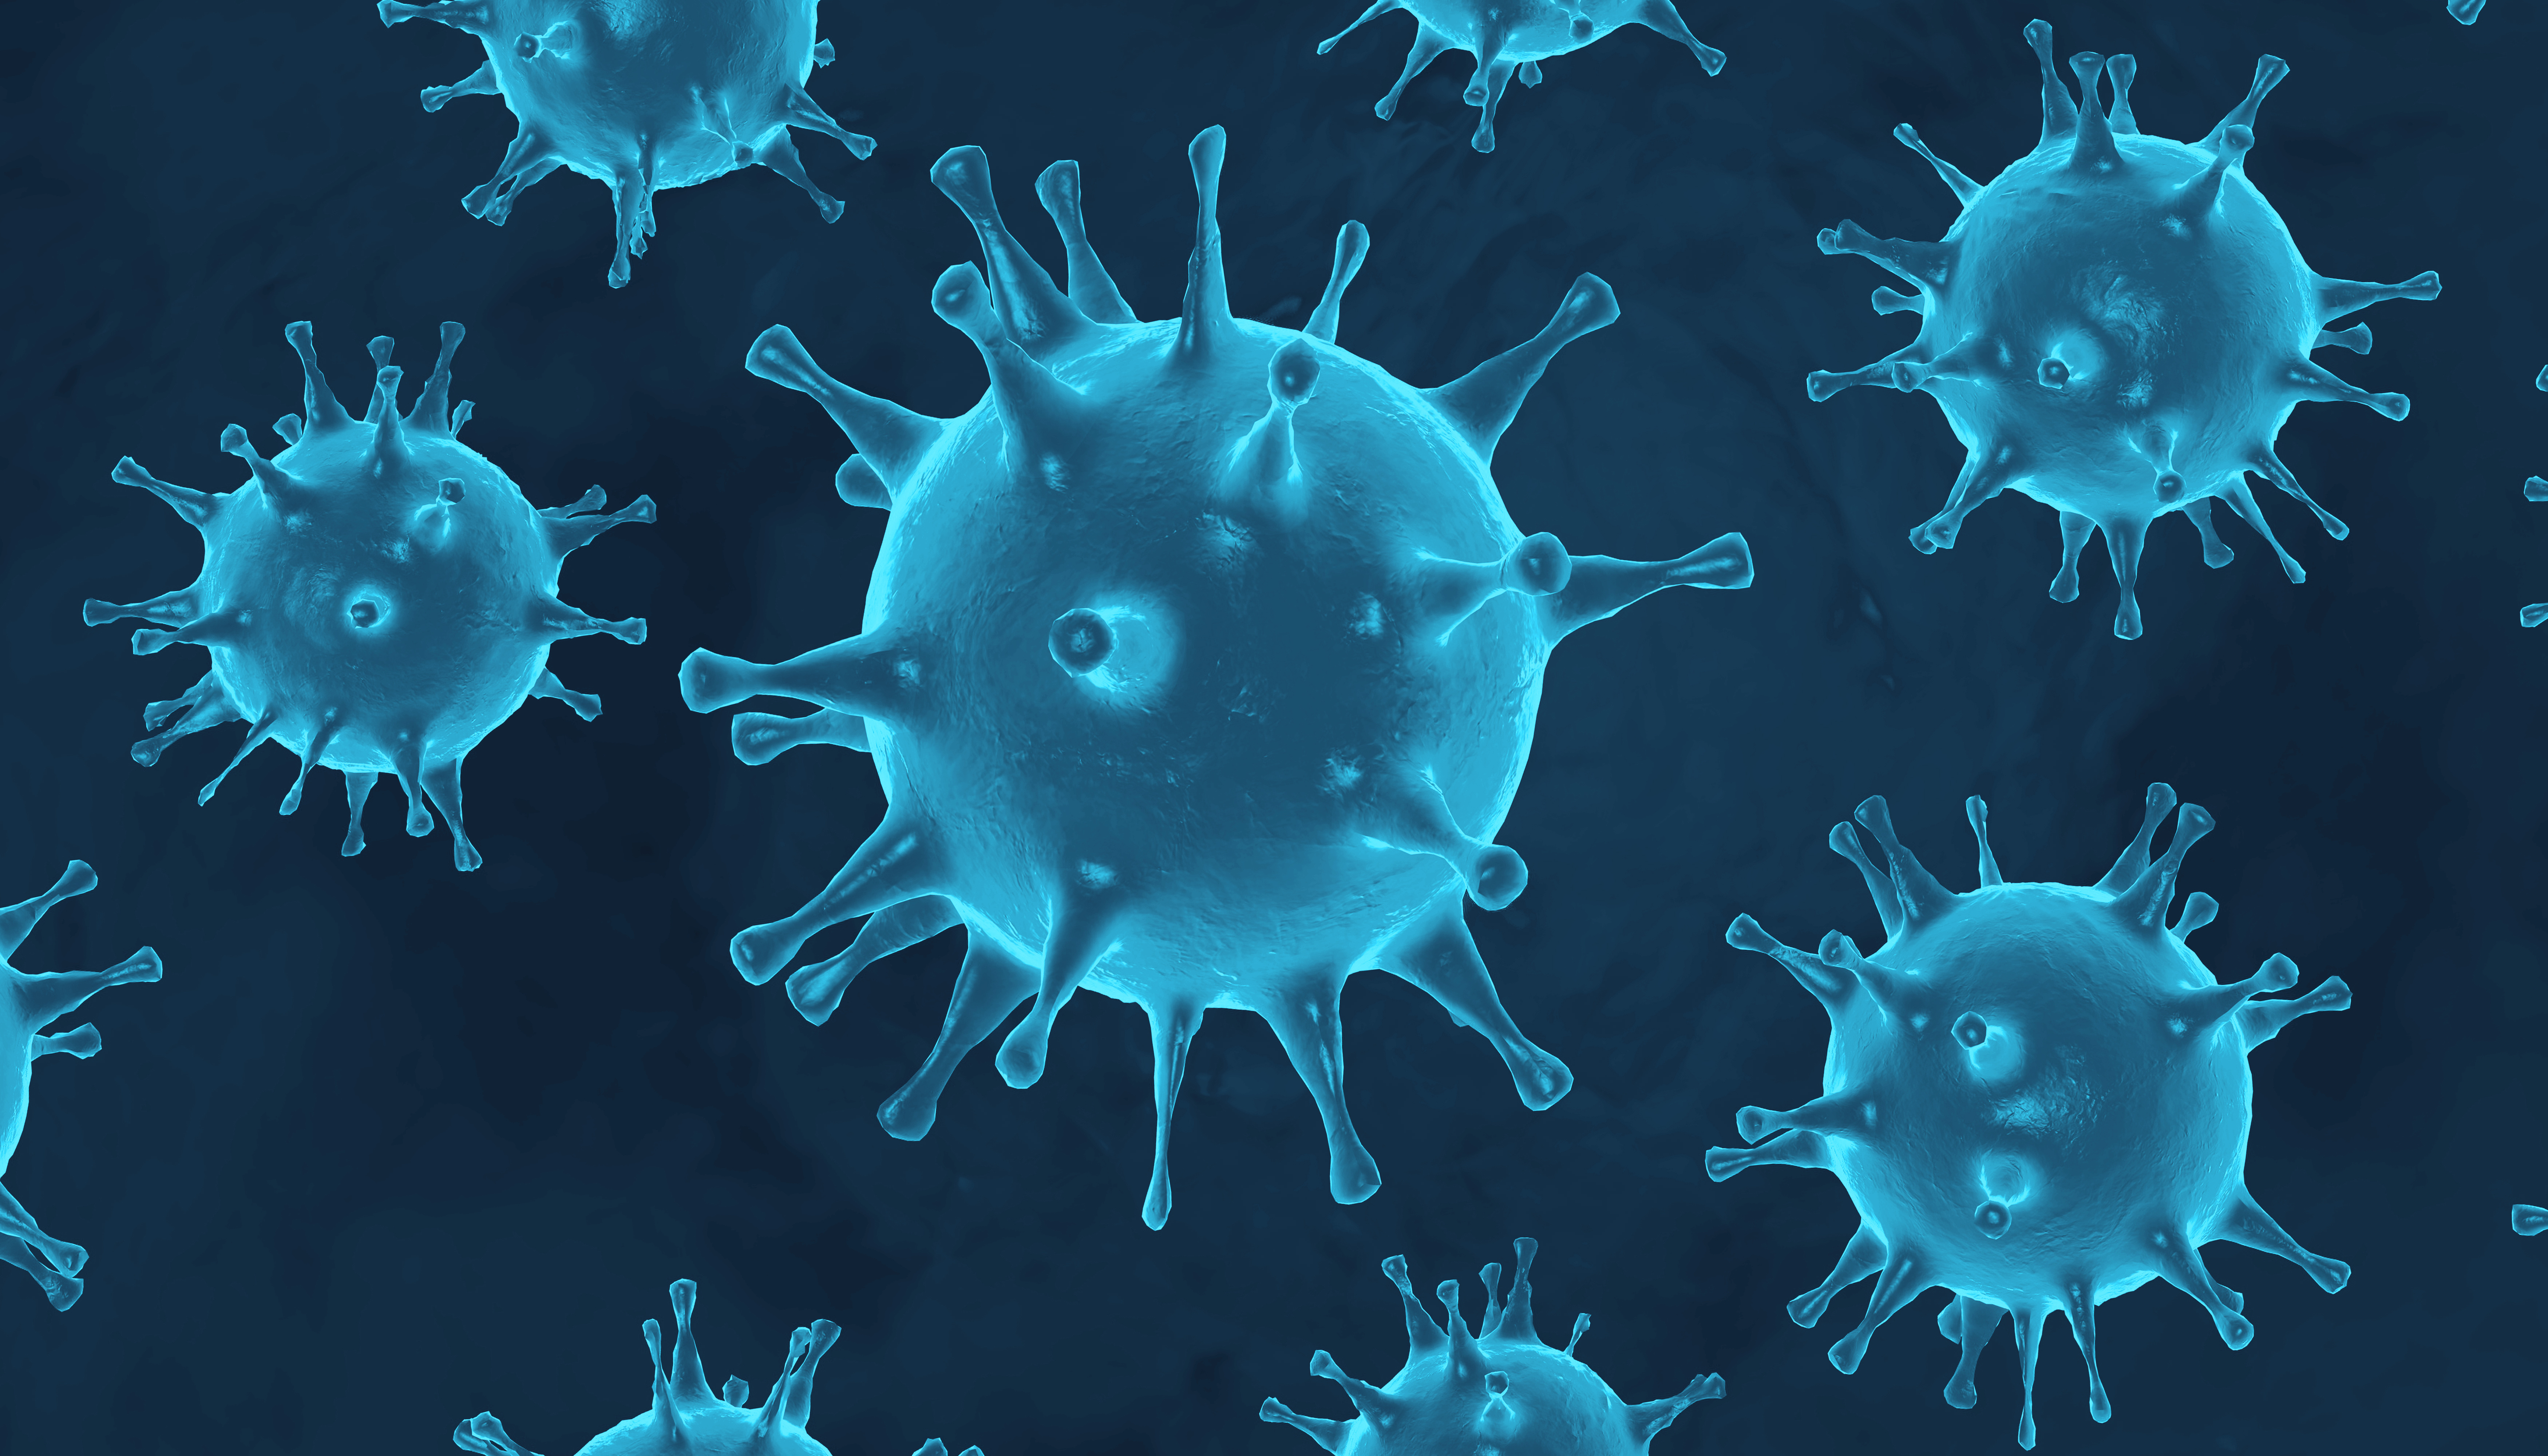 Dunkler Hintergrund mit hellblauen verschieden großen Viren als Schaubild